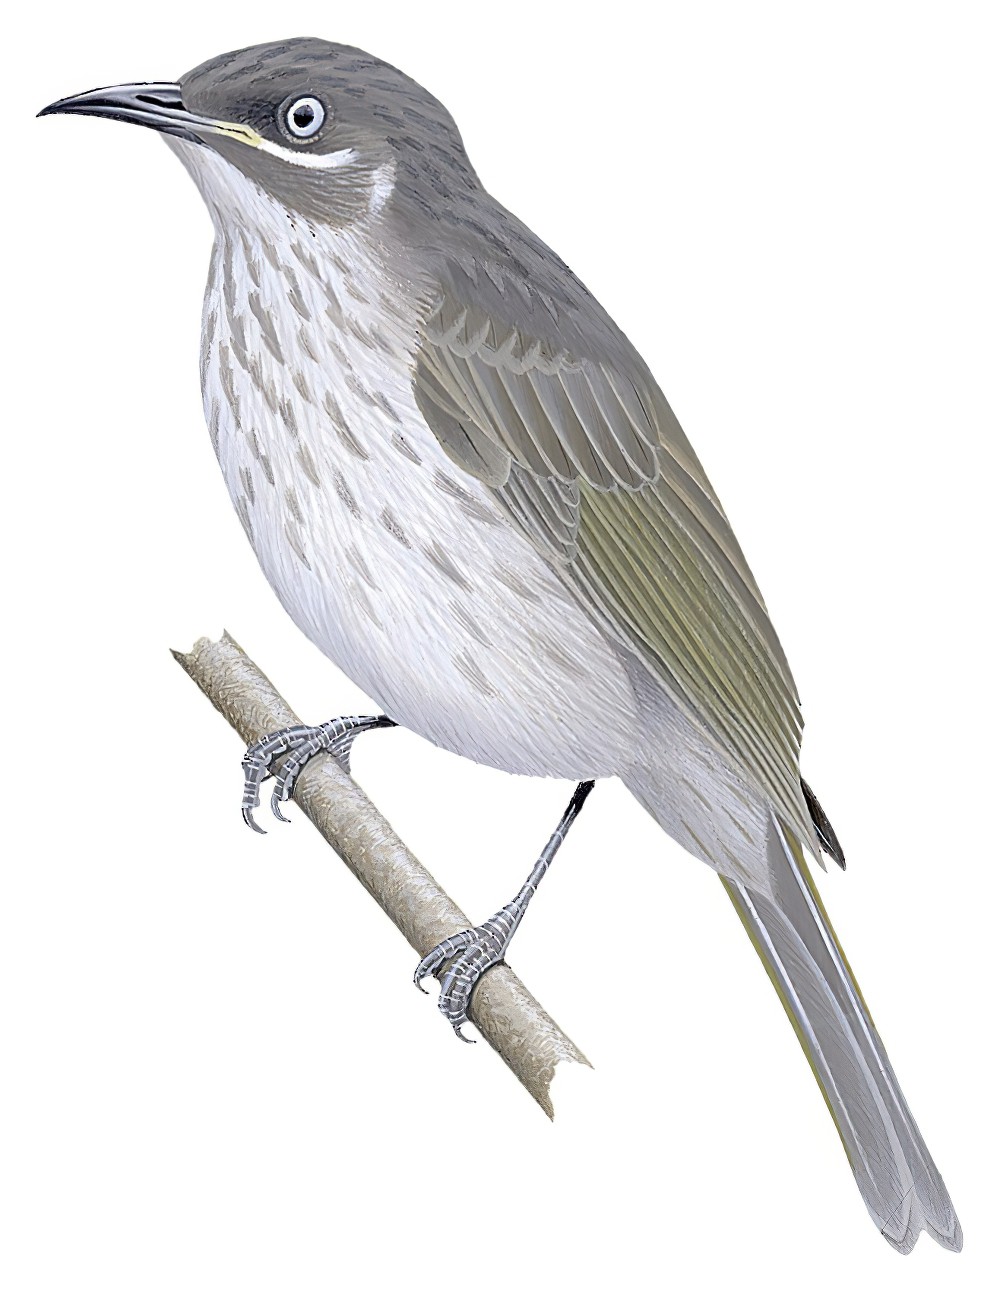 金伯利吸蜜鸟 / Kimberley Honeyeater / Territornis fordiana